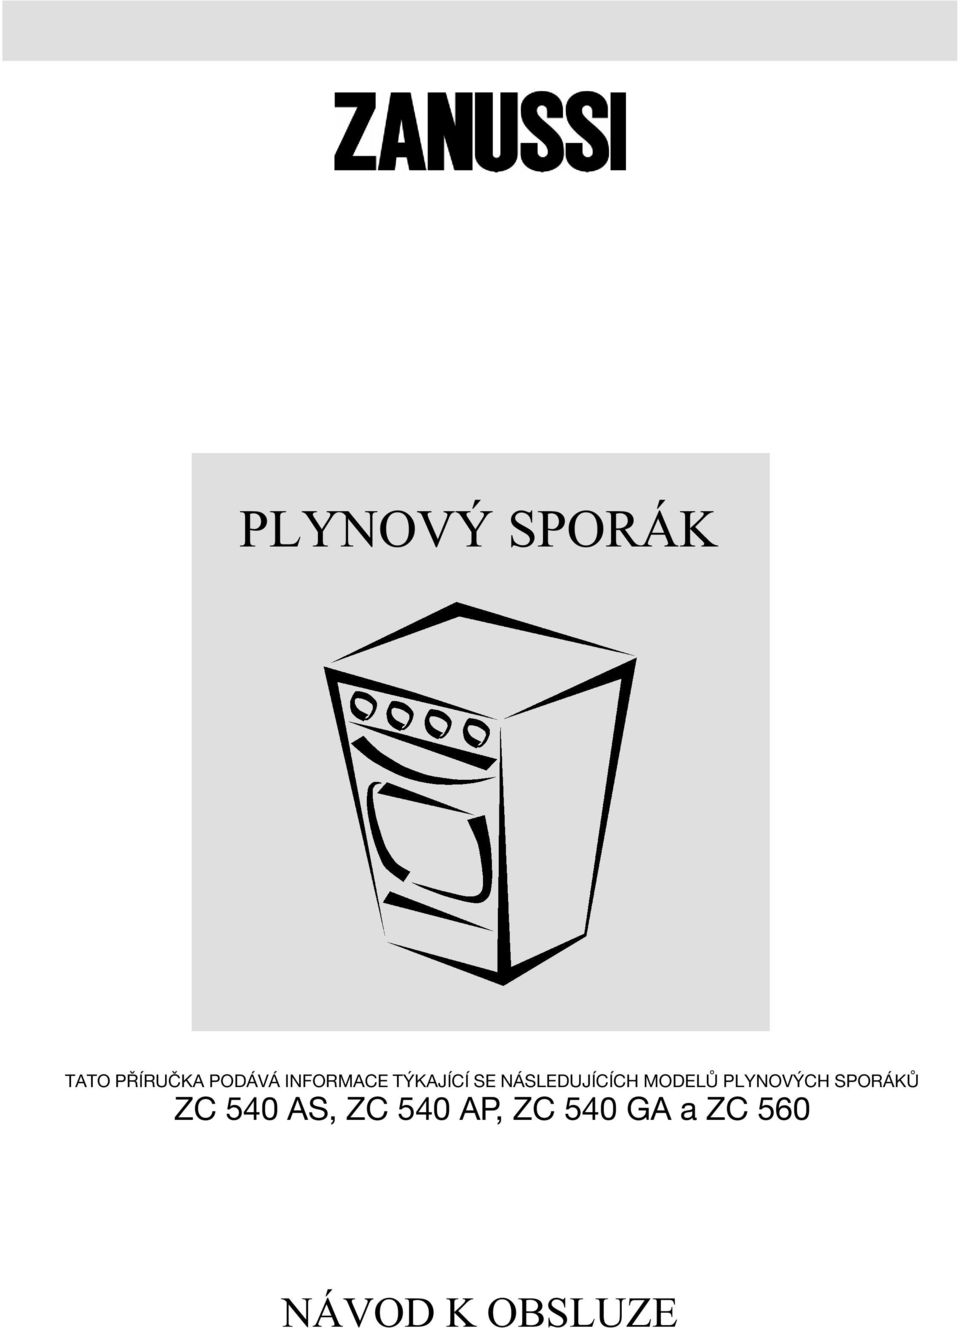 MODELŸ PLYNOV CH SPOR KŸ ZC 540 AS,